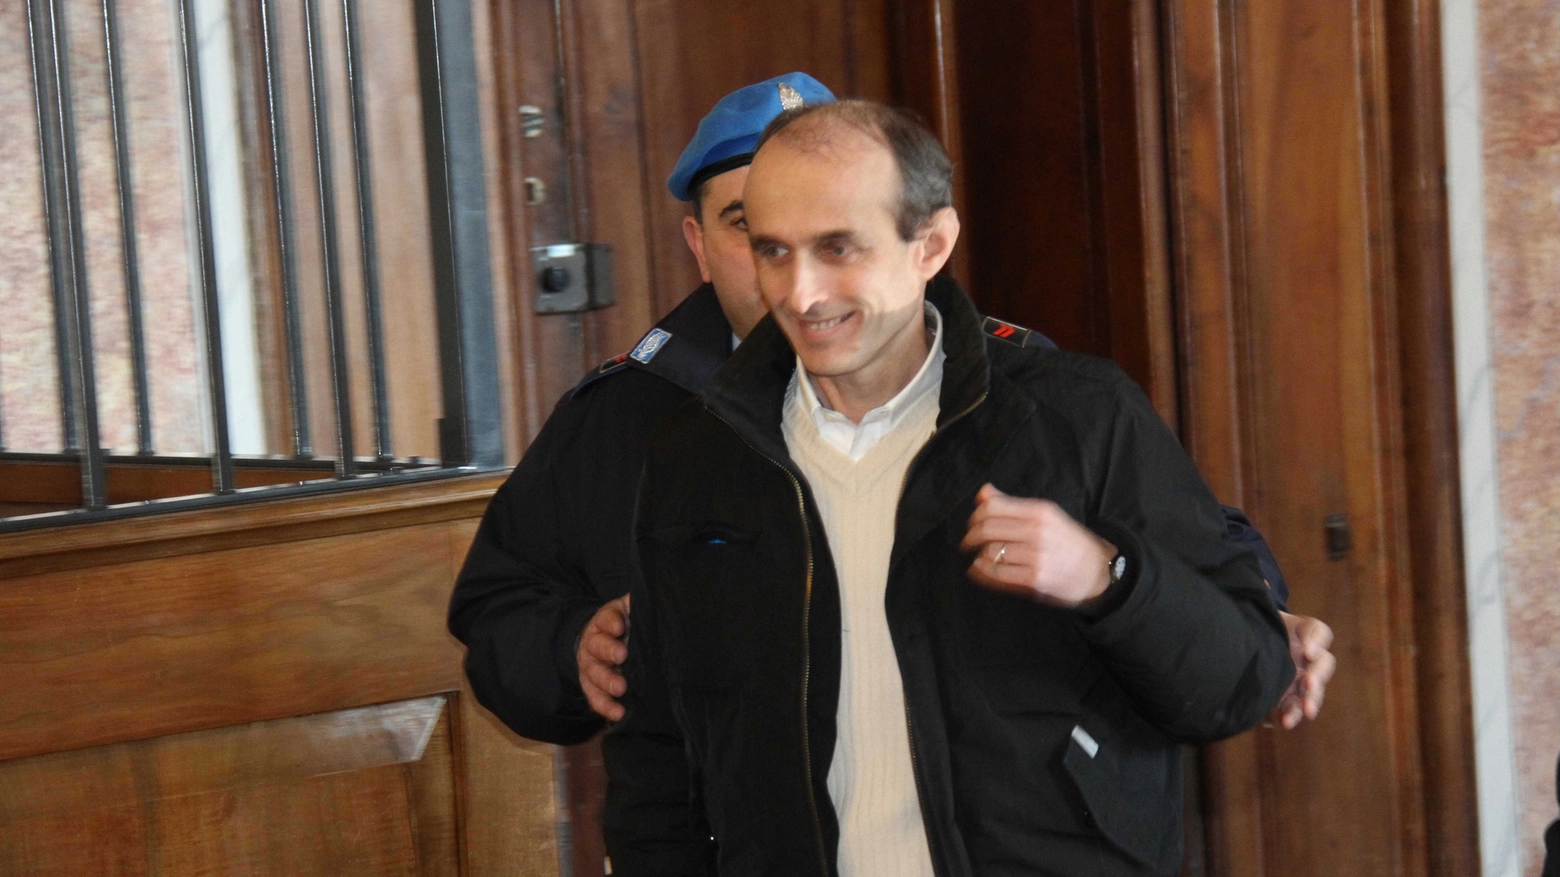 Maurizio Iori accompagnato dalla polizia penitenziaria